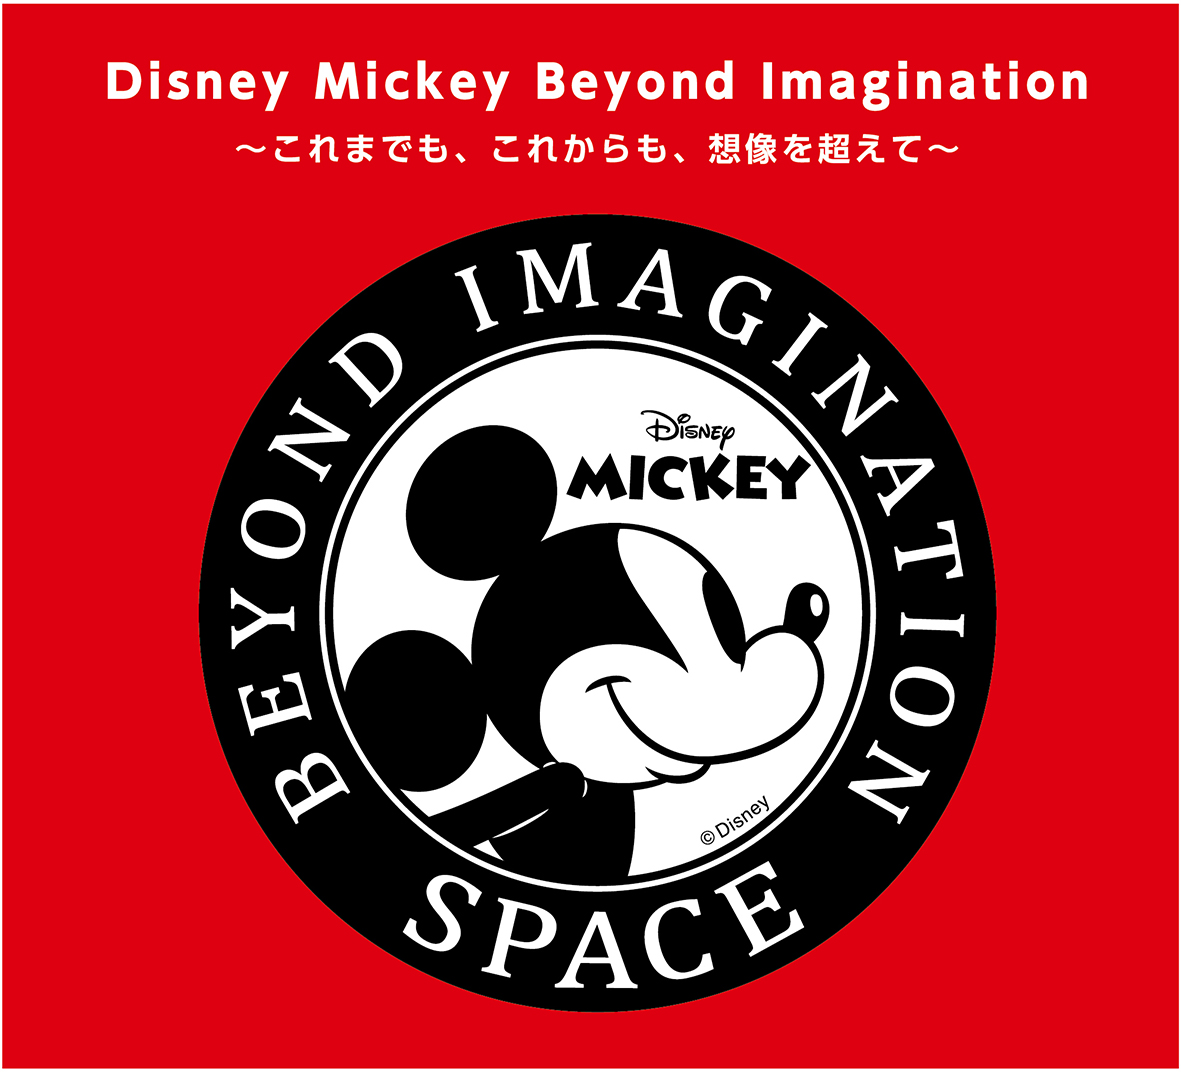 物販催事イベント Disney Mickey Beyond Imagination Space 3月1日 木 3月21日 水 祝 そごう千葉店 ジュンヌ４階にて開催 日テレサービスのプレスリリース